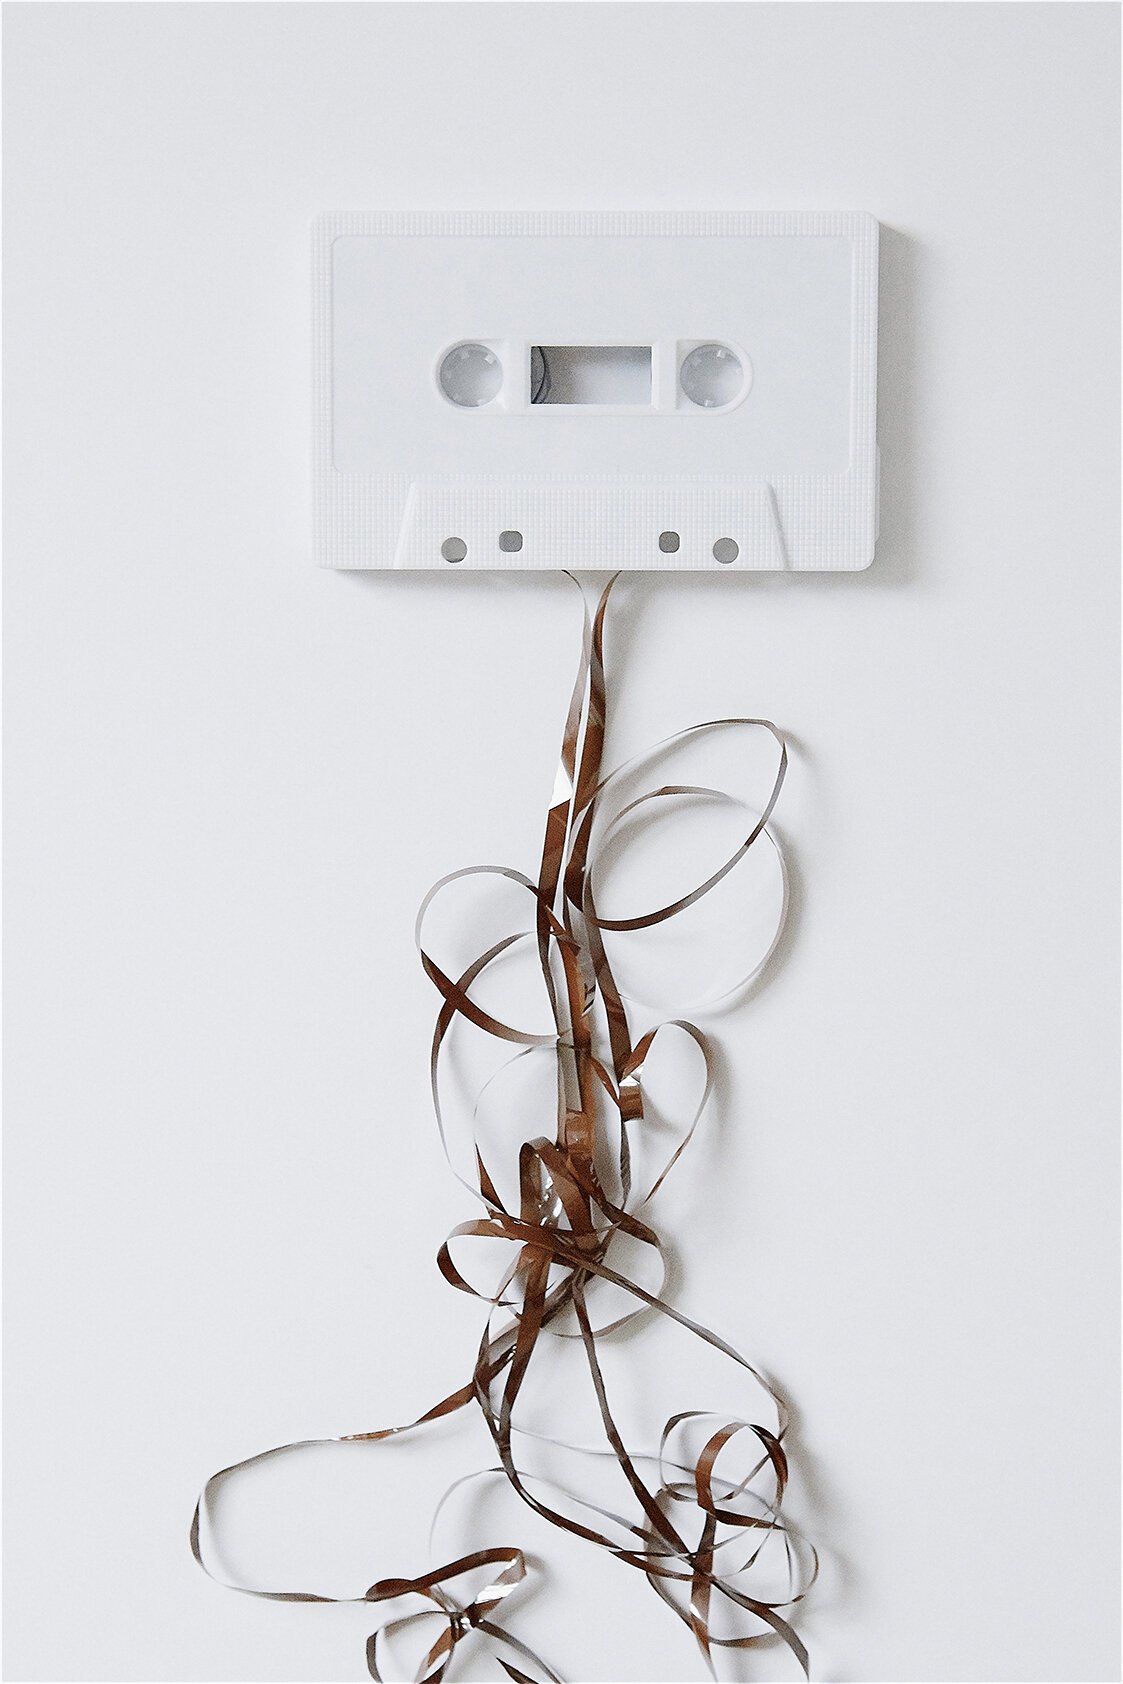 white-cassette-tape-creative-nowhere-land-matt-wilson-artist.jpg